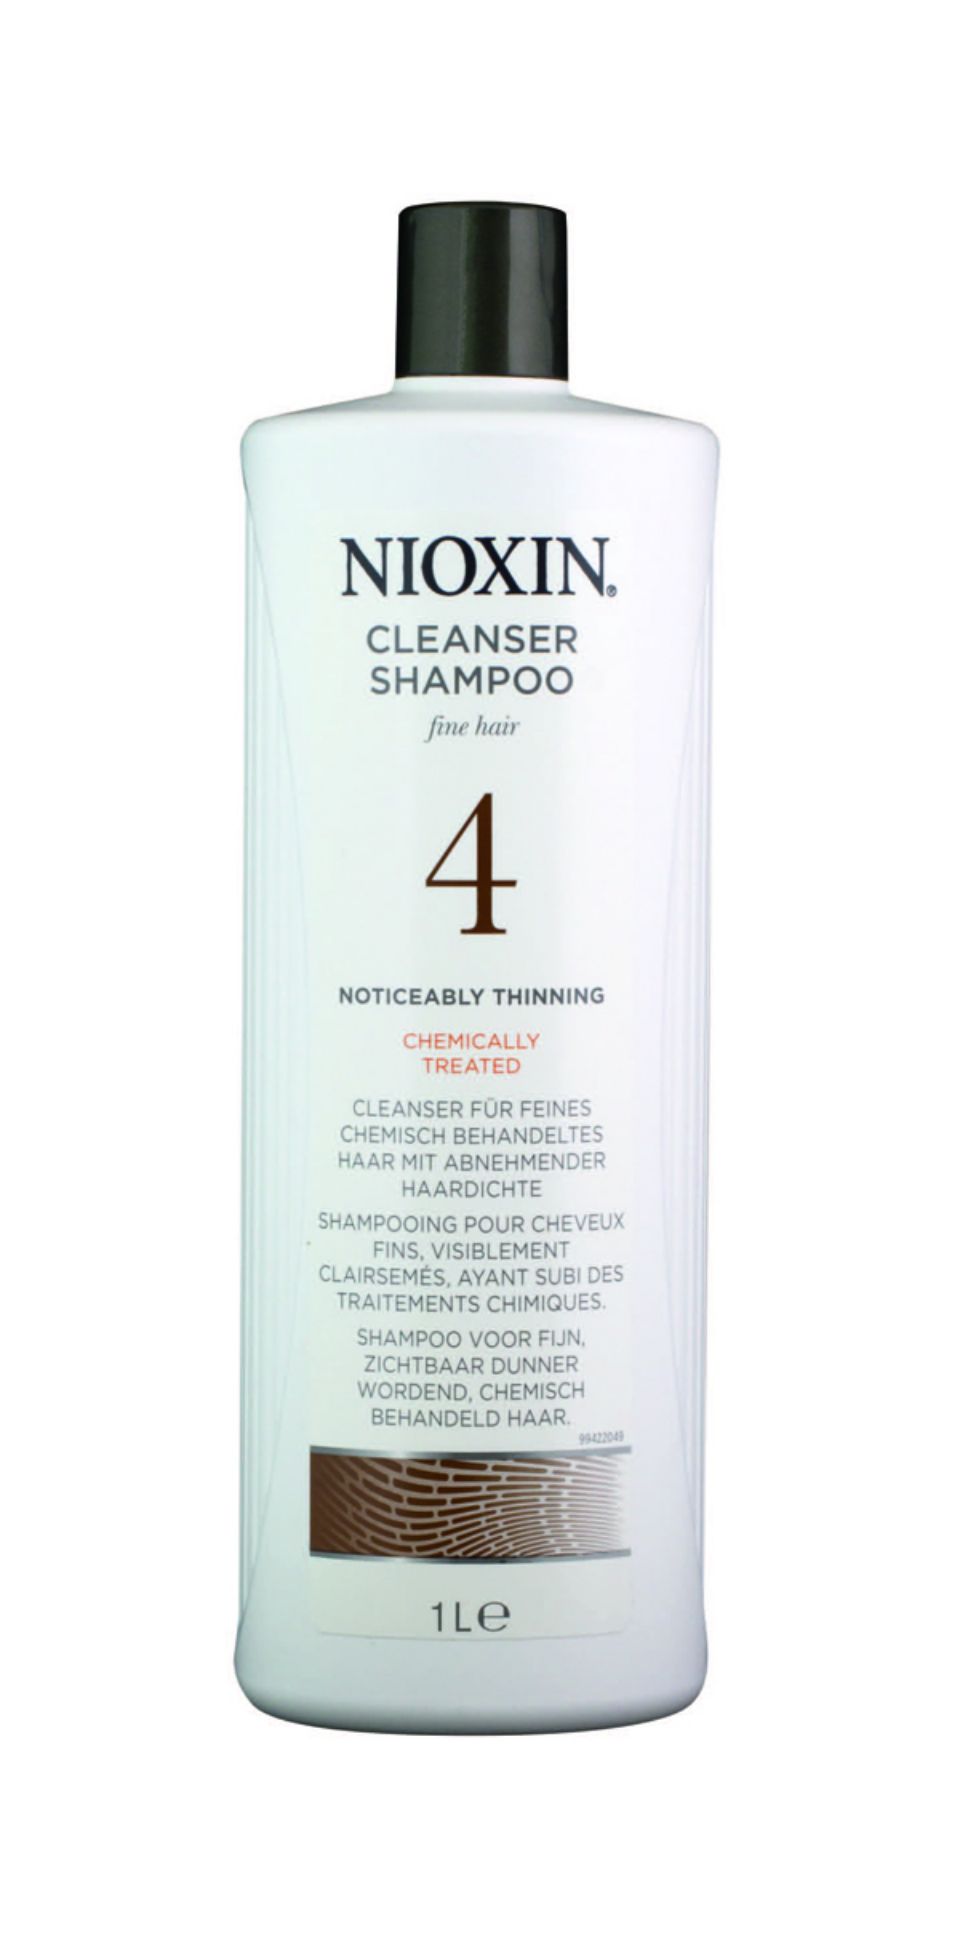 Nioxin een mooi product